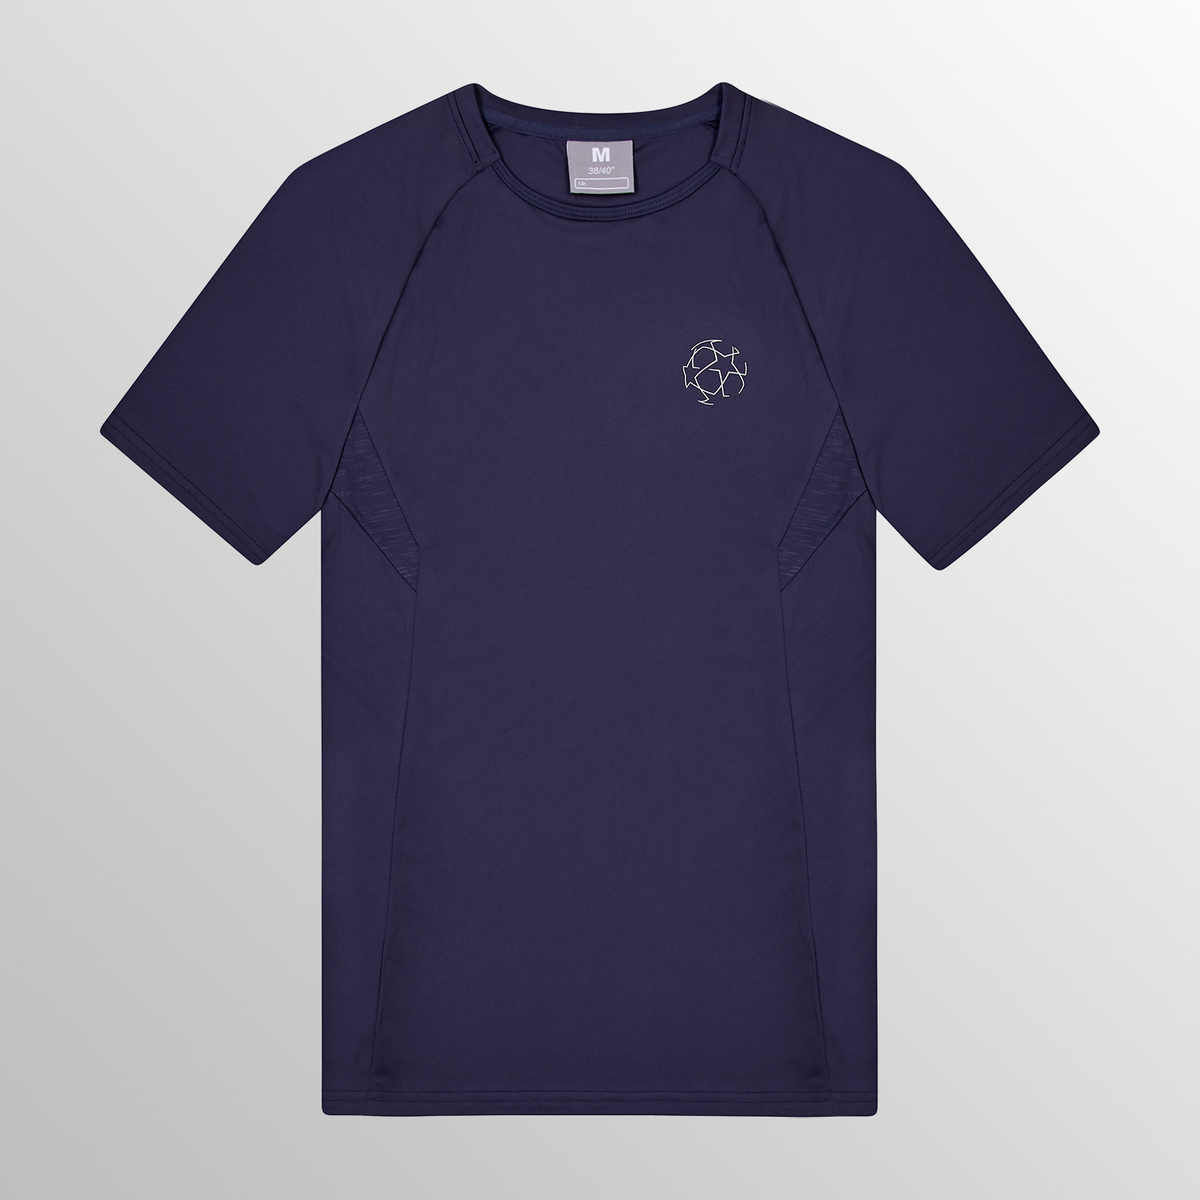 UEFA Champions League - Camiseta Eco Tech Premium